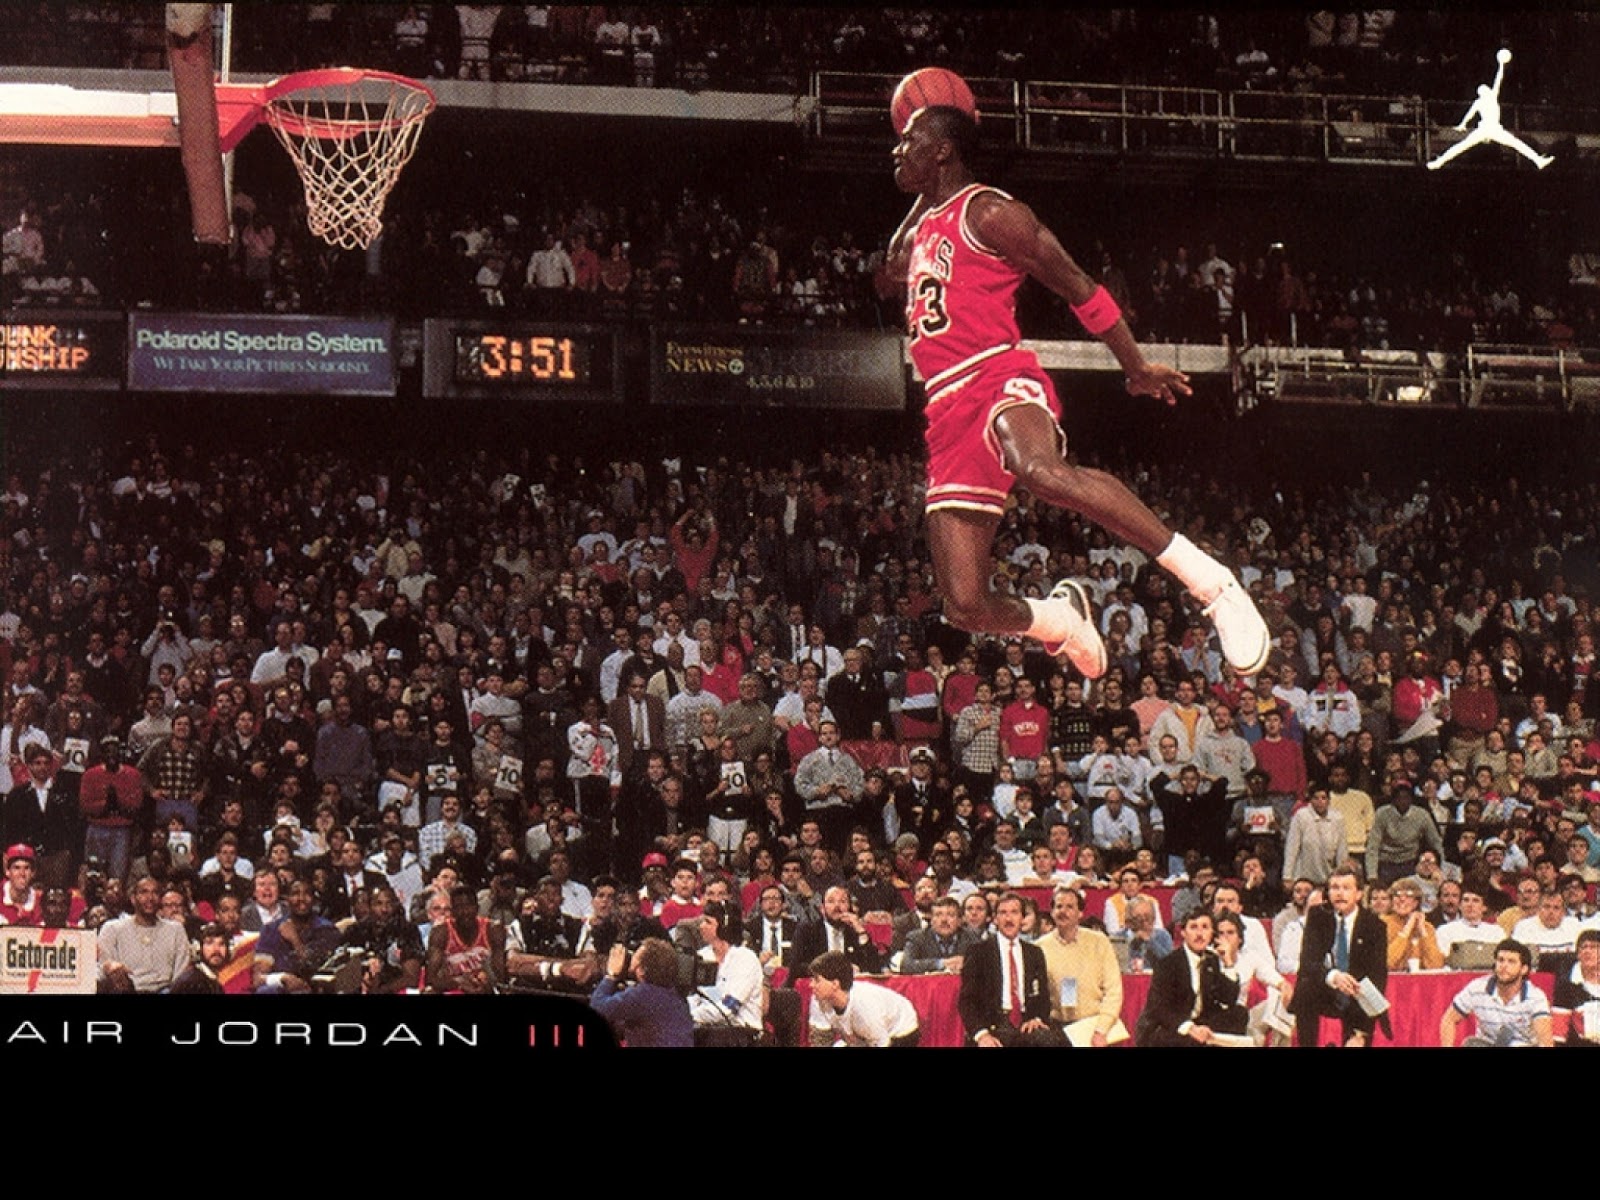 http://3.bp.blogspot.com/-JZSfk4cQC-0/UOw-ZphZi2I/AAAAAAAAxqs/pHNH-SWYfUc/s1600/Slam-Dunk-Jumping-Michael-Jordan-Chicago-Bulls-NBA-Walpapers-HD.jpg